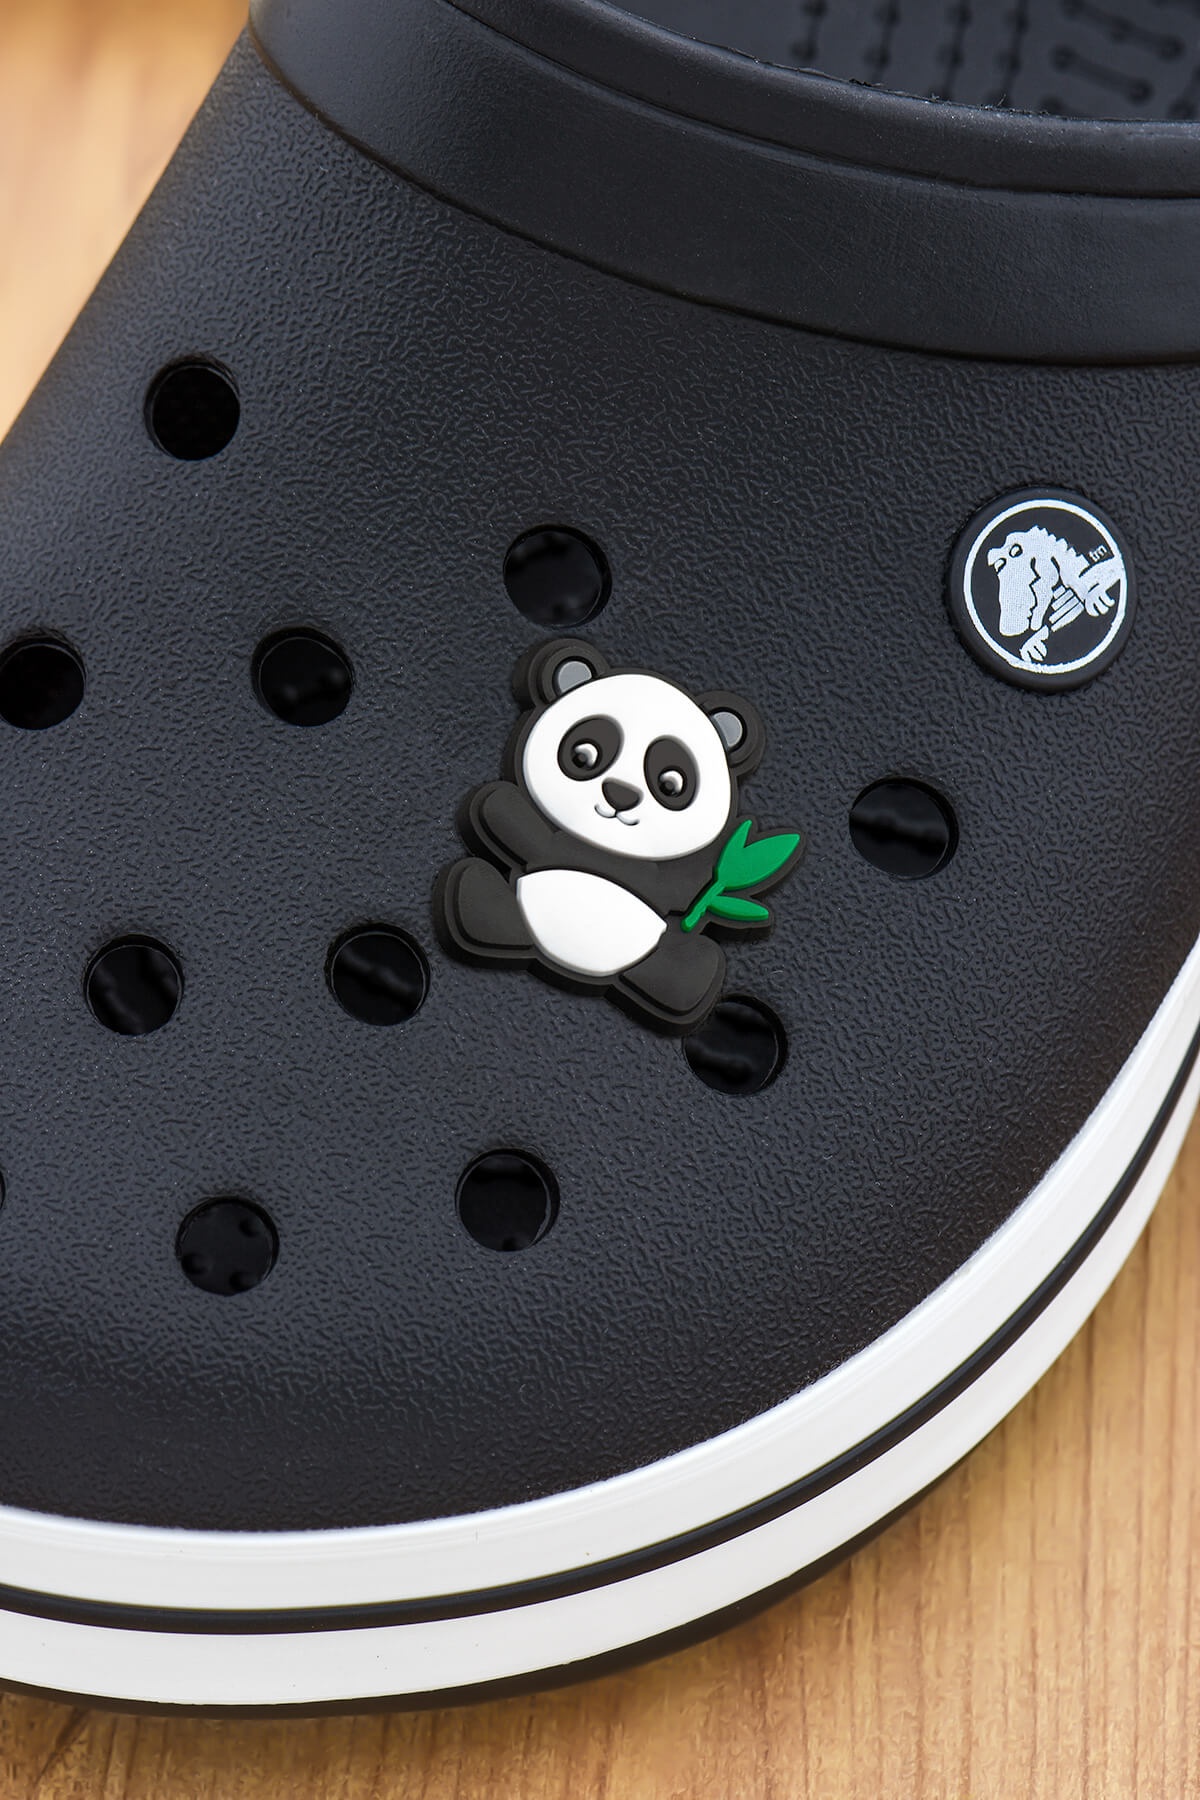 Panda Crocs Süsü Bileklik Terlik Süsü Charm Terlik Aksesuarı - CRS0234